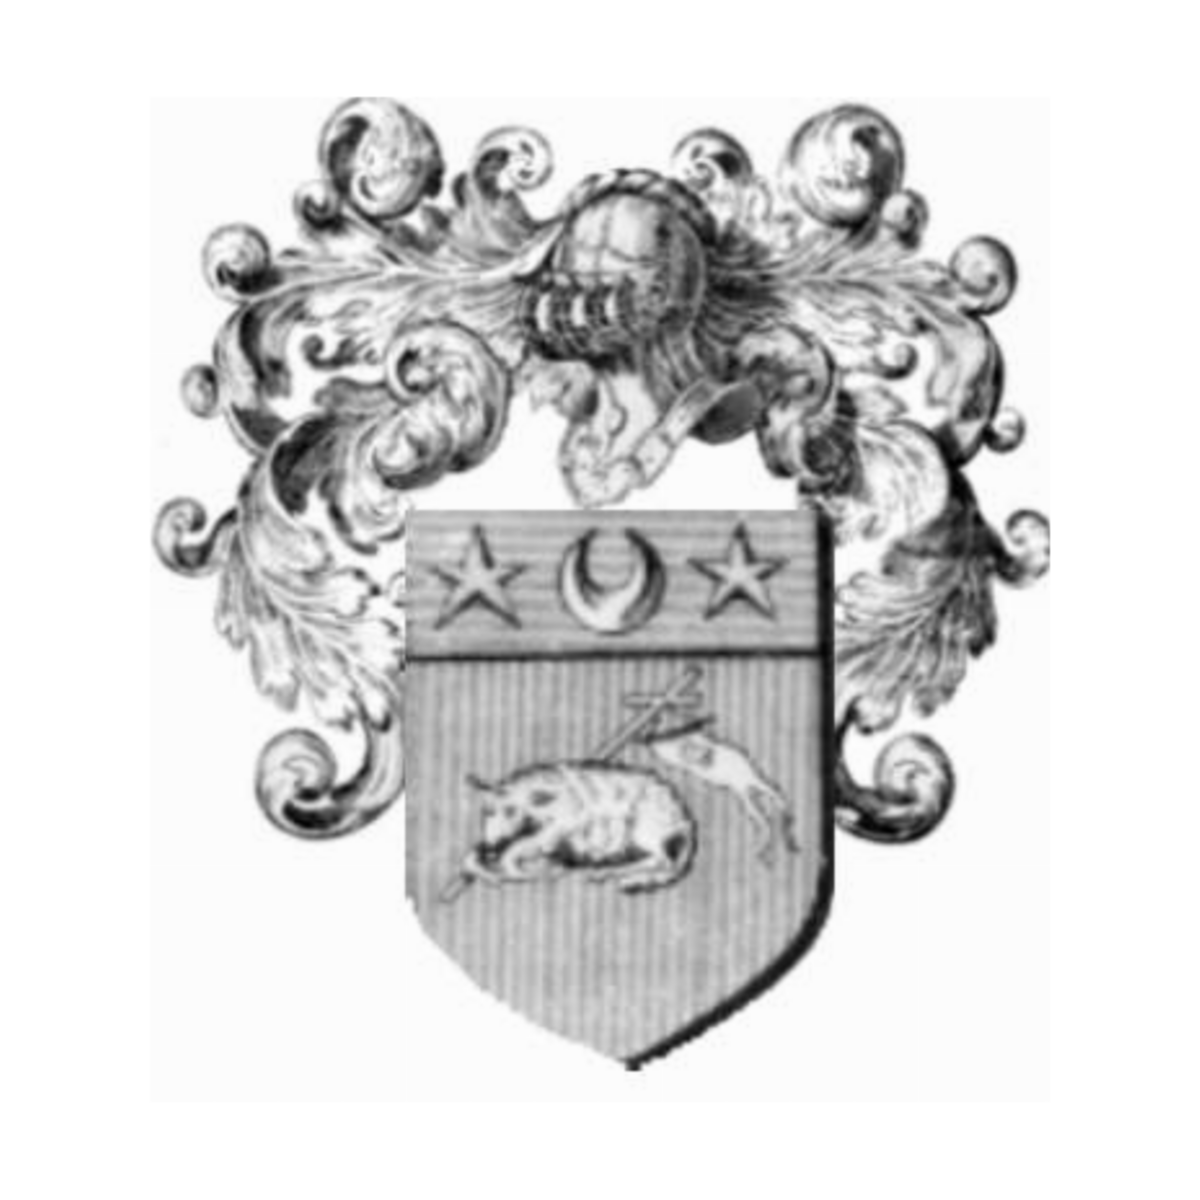 Wappen der Familie Pasquali